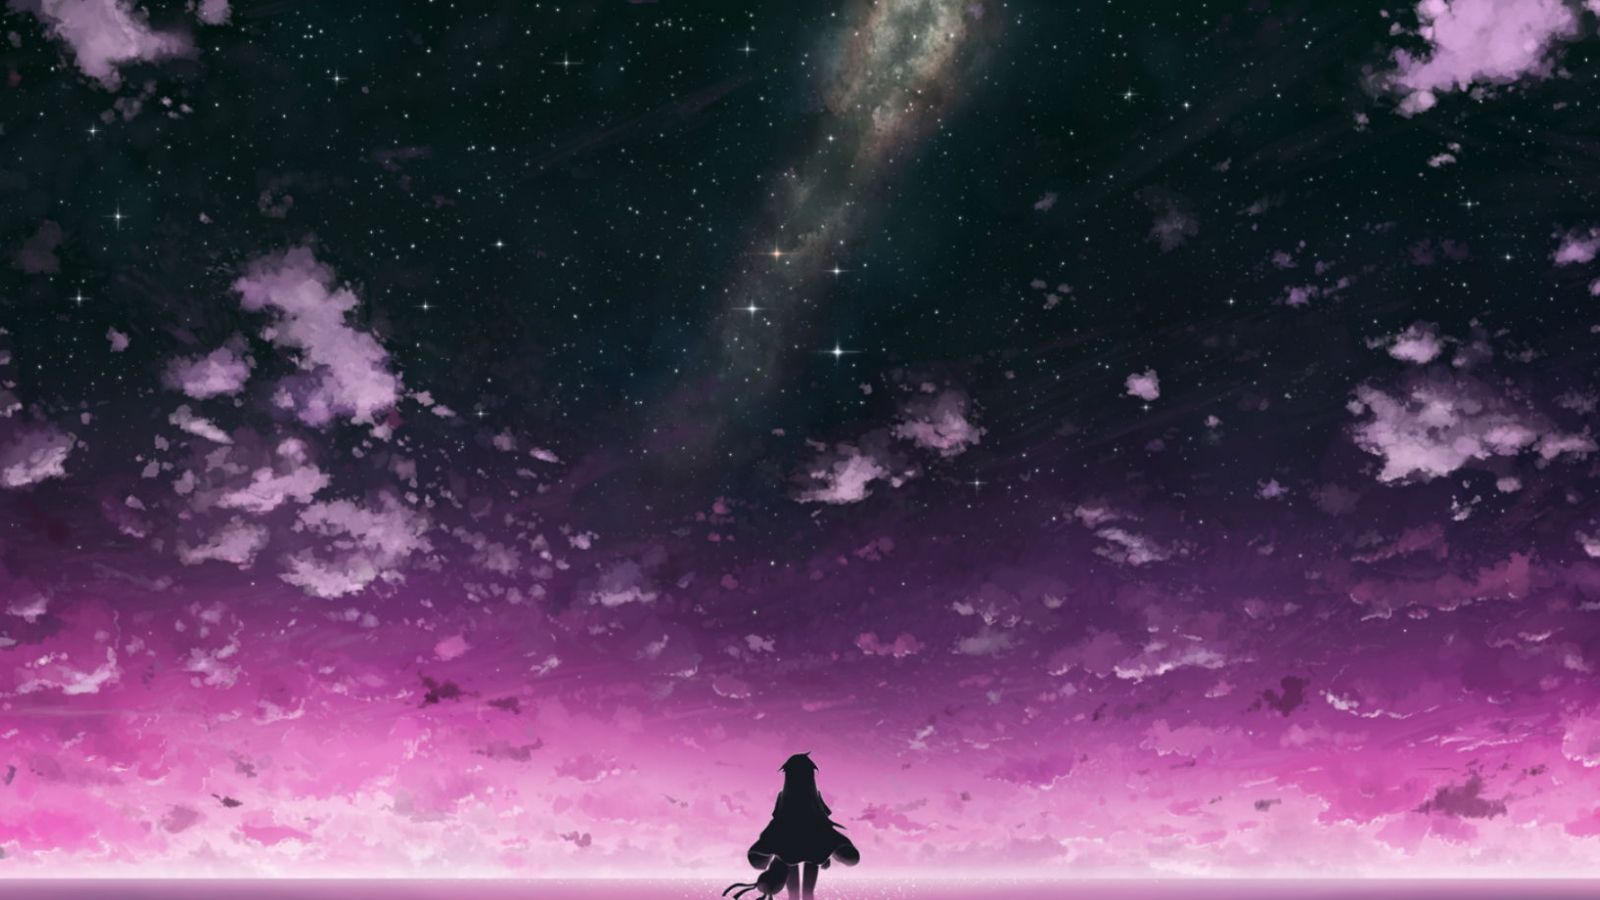 dark purple almost dark anime night sky - Playground